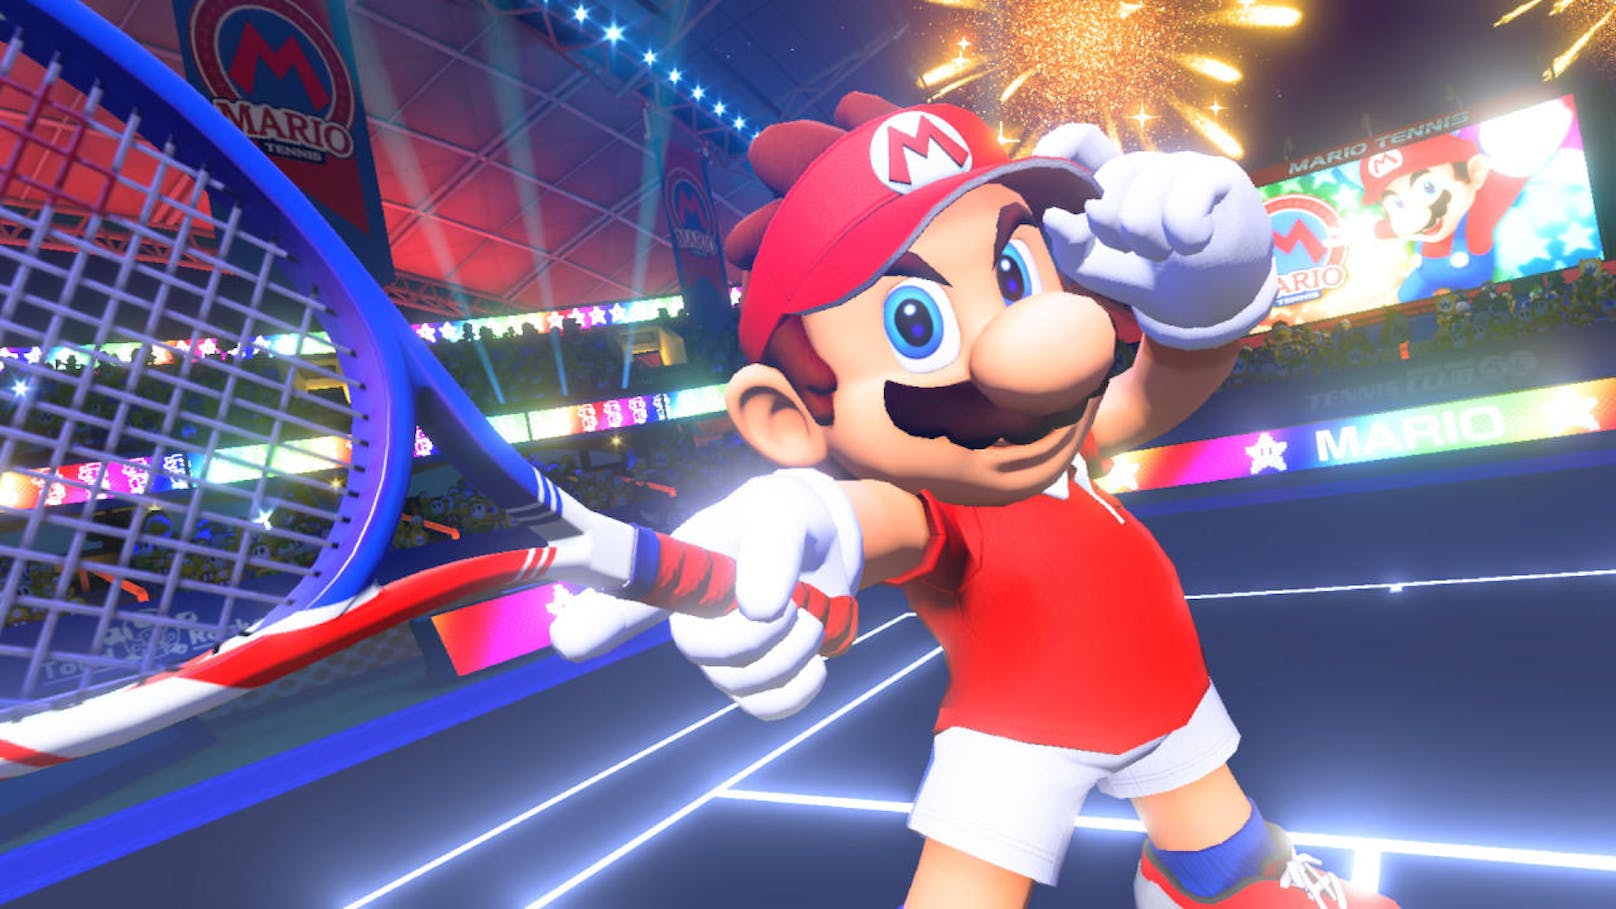 Das letzte große Mario Tennis-Game für Konsolen enttäuschte auf ganzer Linie. Mario Tennis: Ultra Smash für die gescheiterte Wii U sah zwar nett aus und spielte sich auch gut, doch der Umfang bewegte sich eher in Regionen eines Download-Games um 15 Euro statt eines Vollpreistitels.